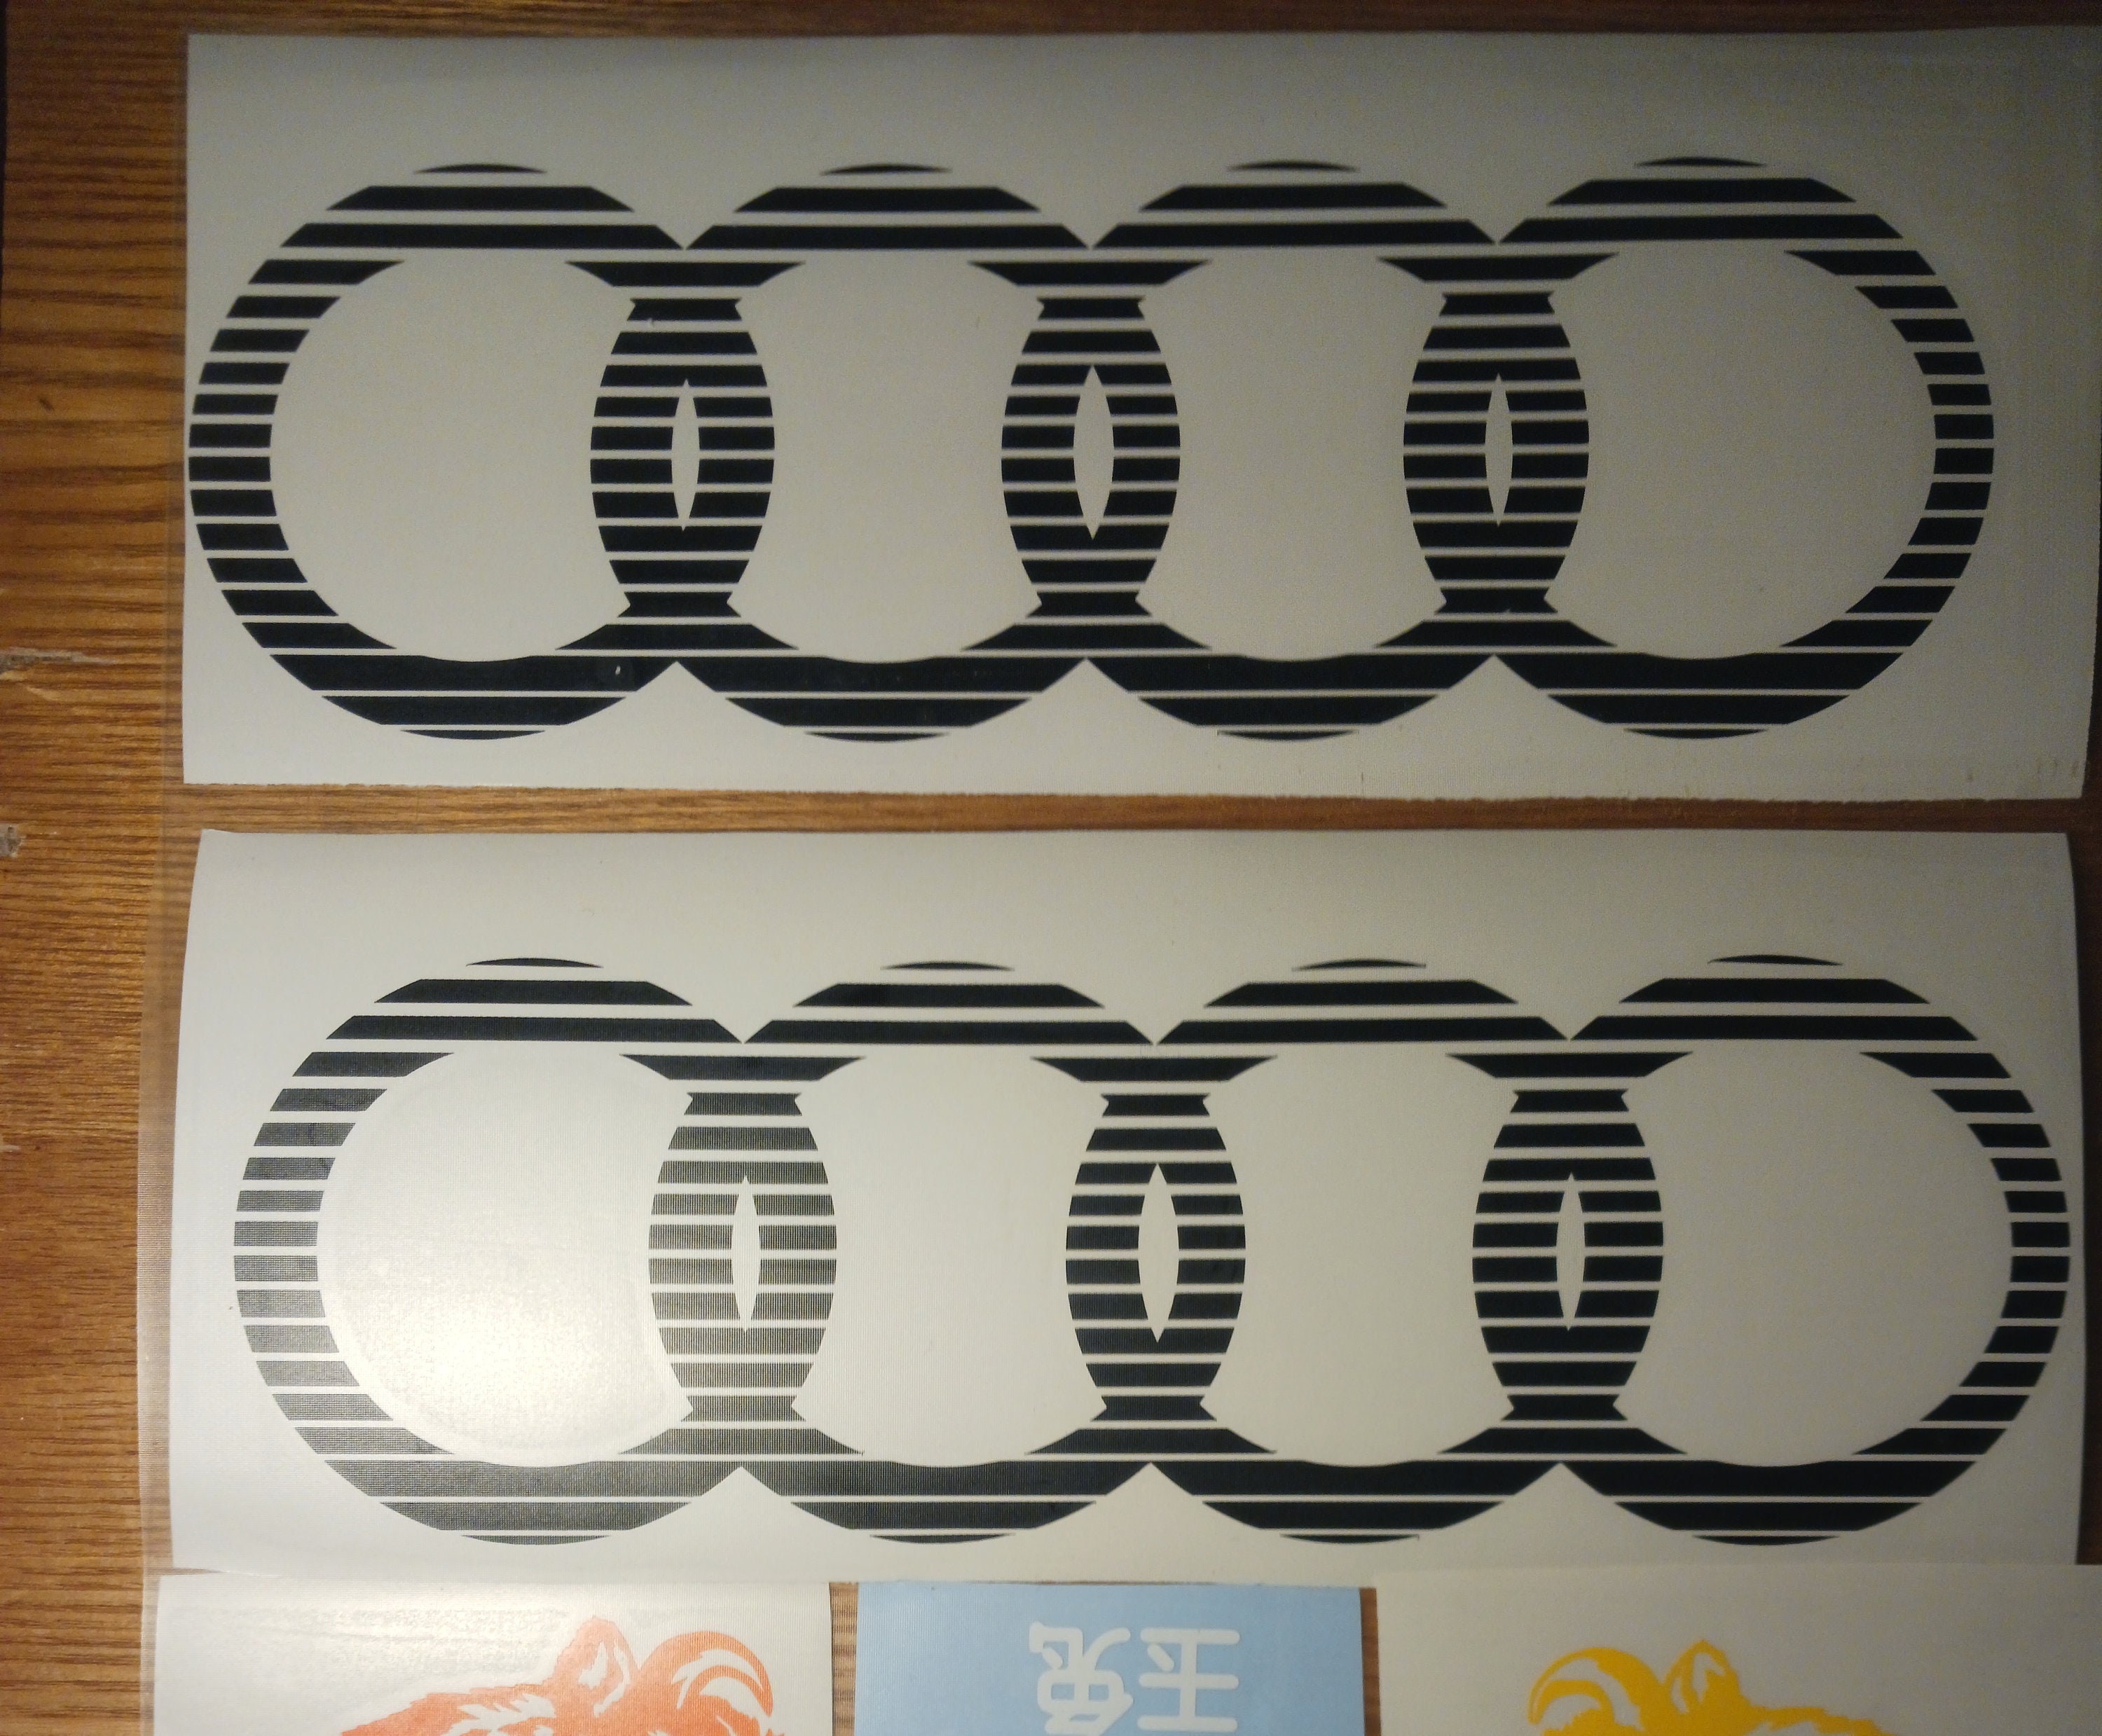 Stickers Audi pour rétroviseurs - kit 2 autocollants